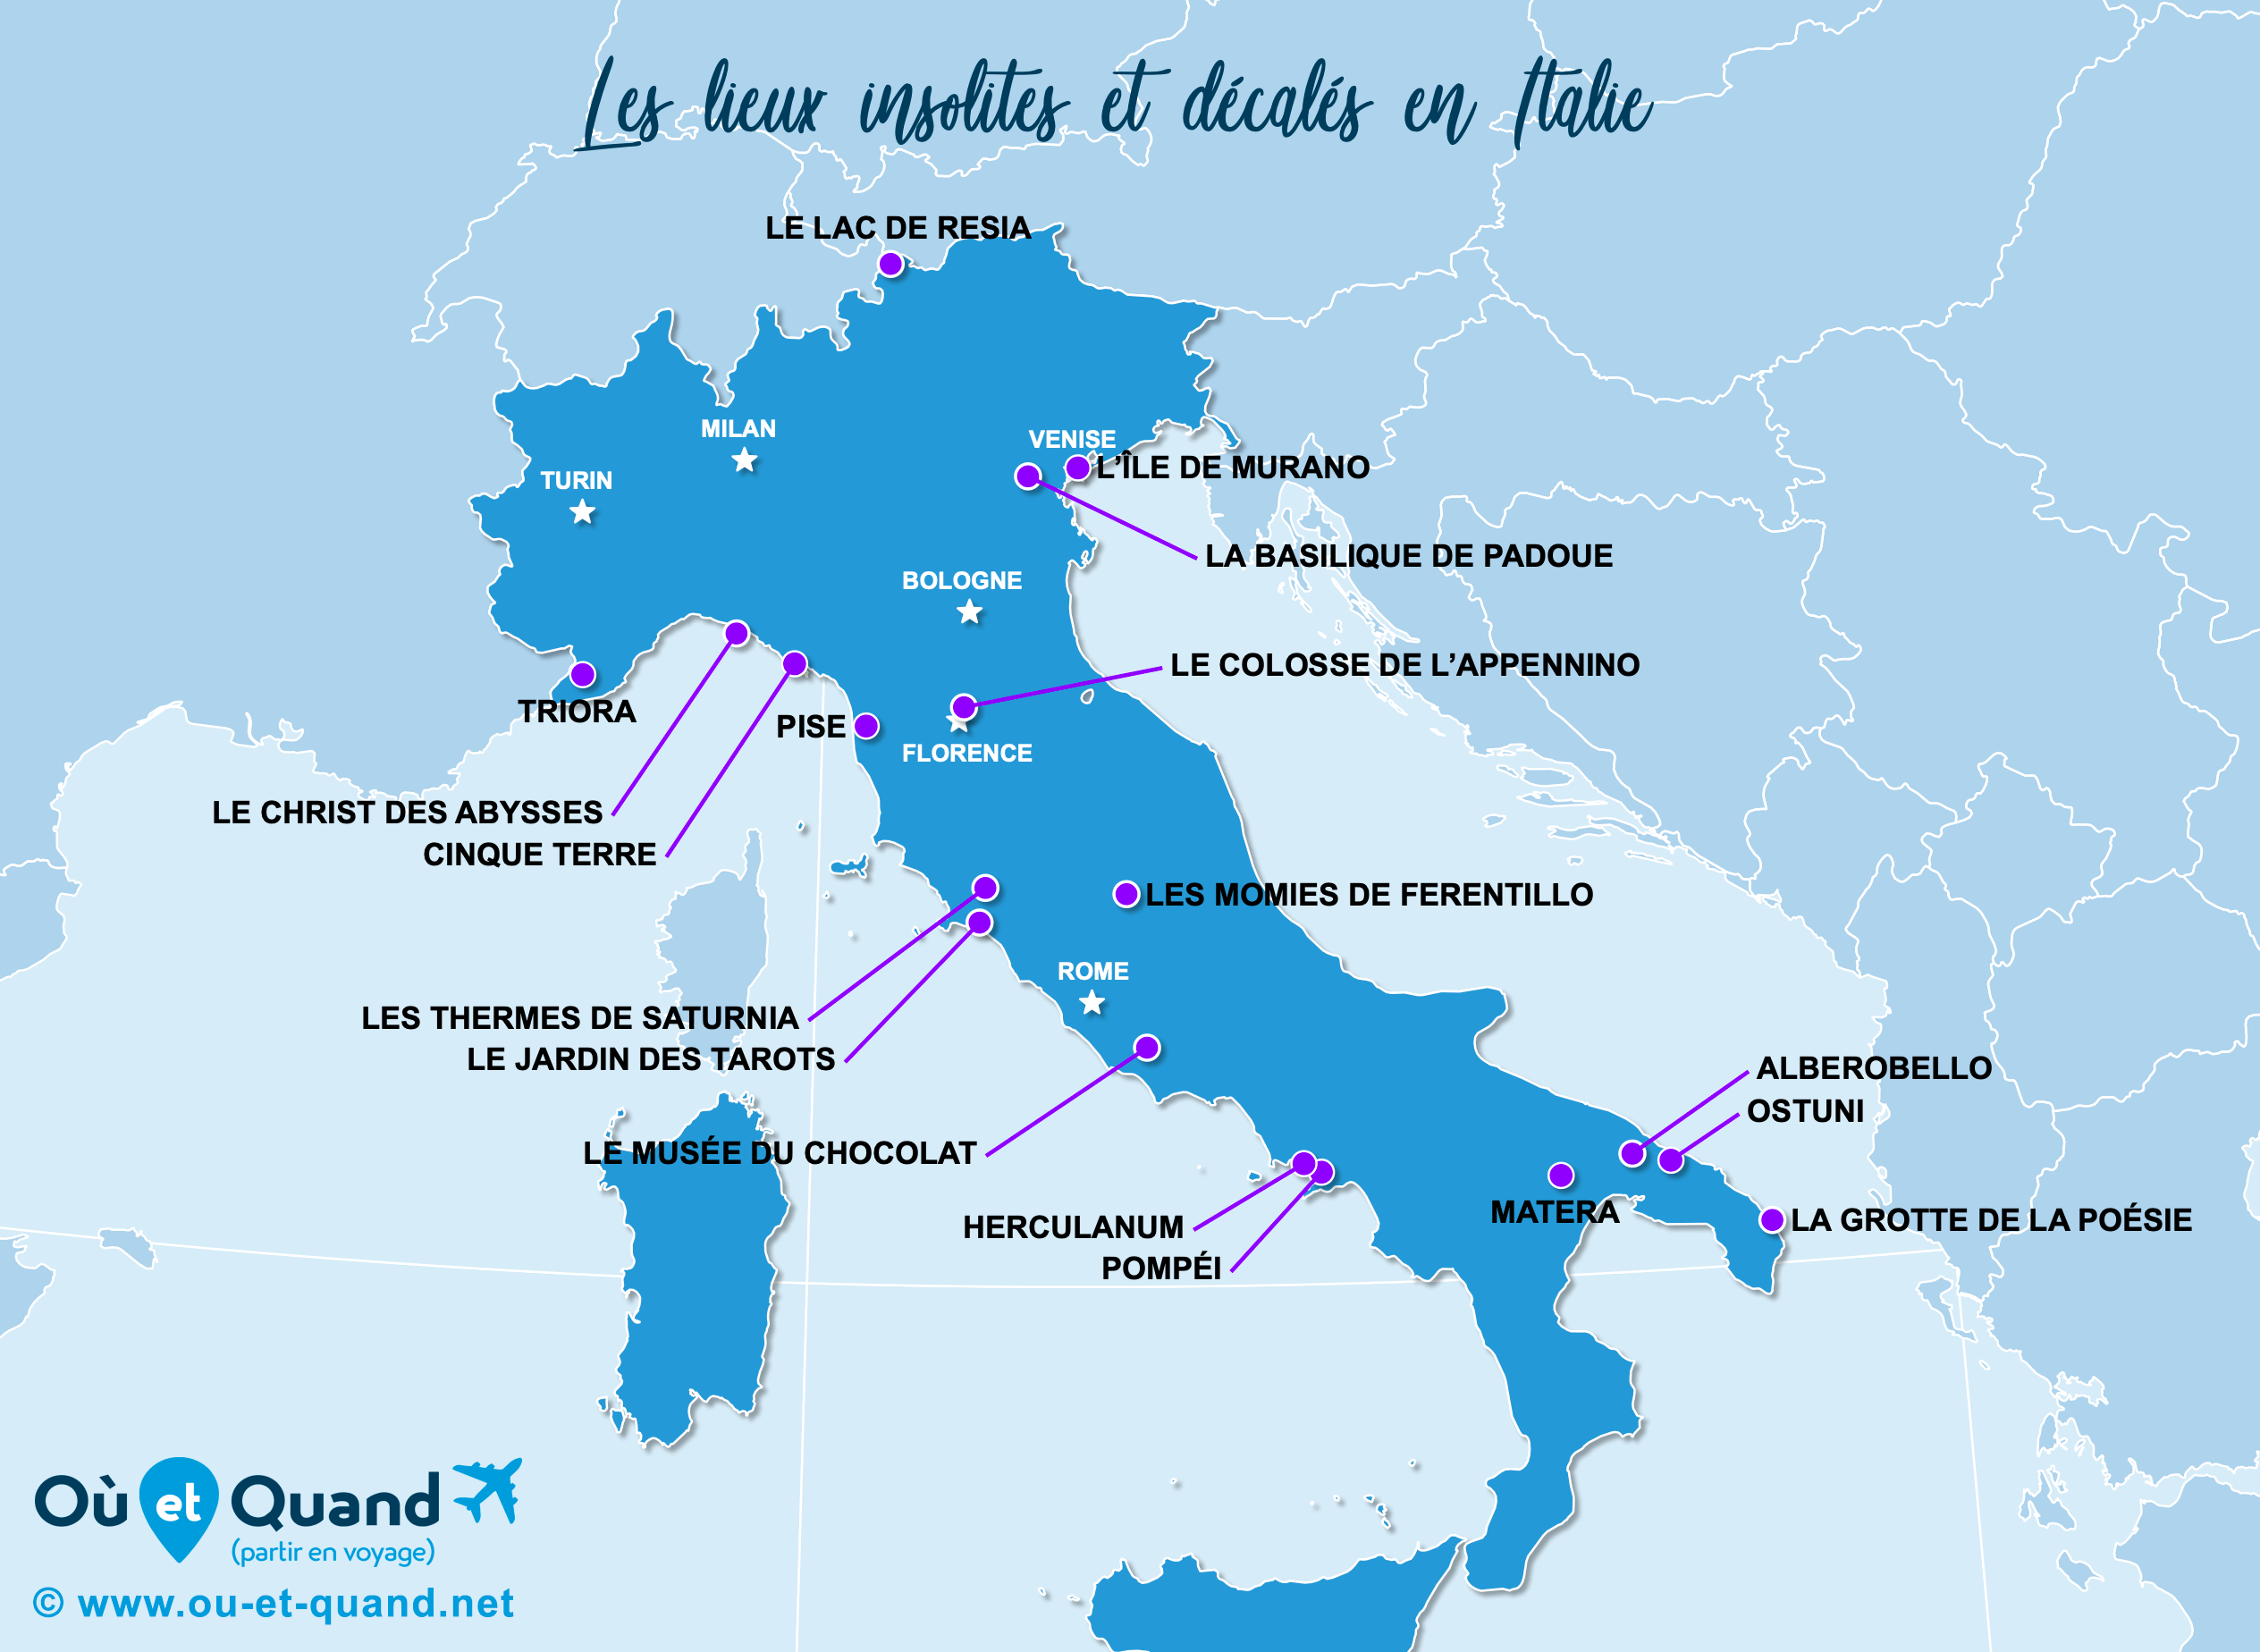 La carte des lieux insolites en Italie